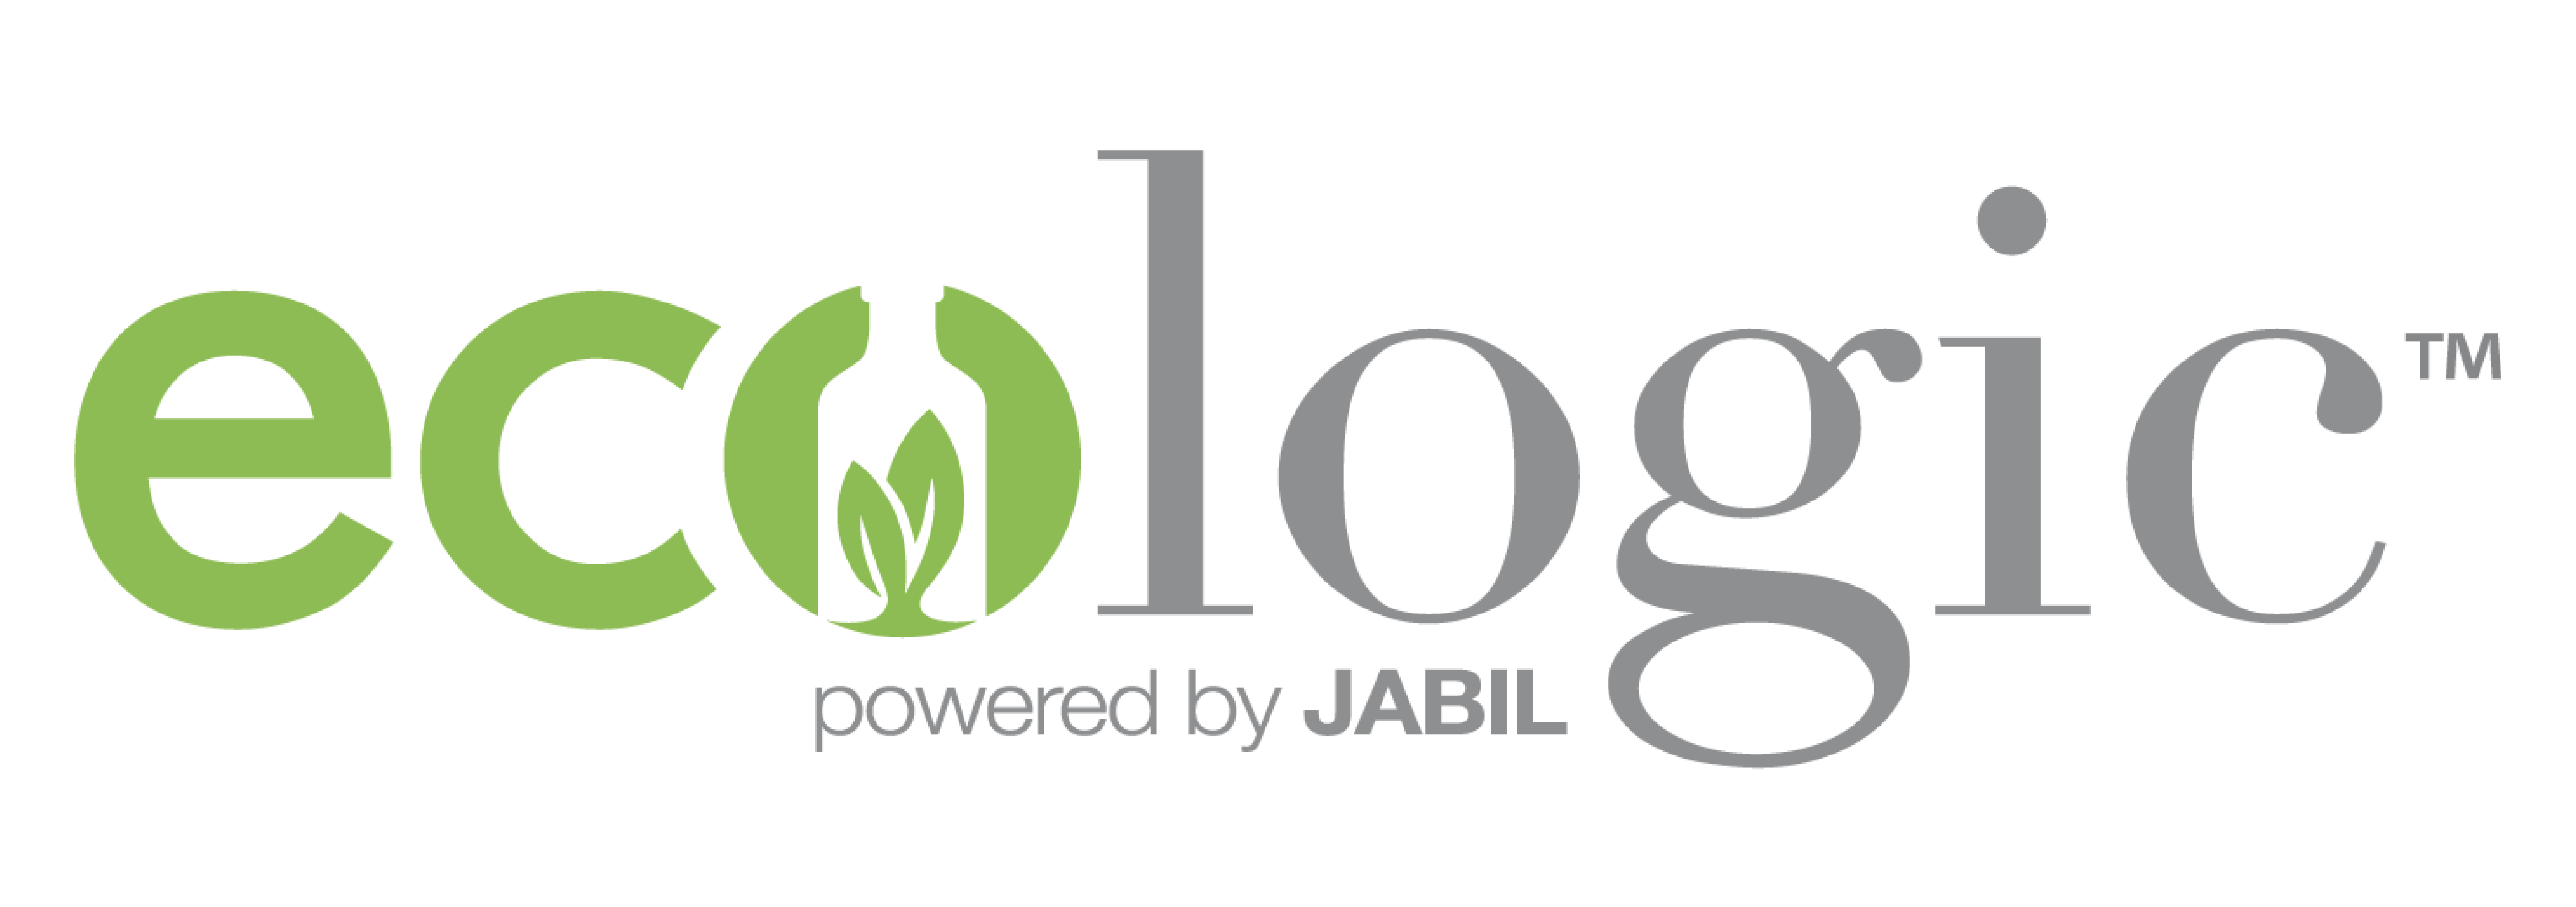 Ecologic Powered by Jabil